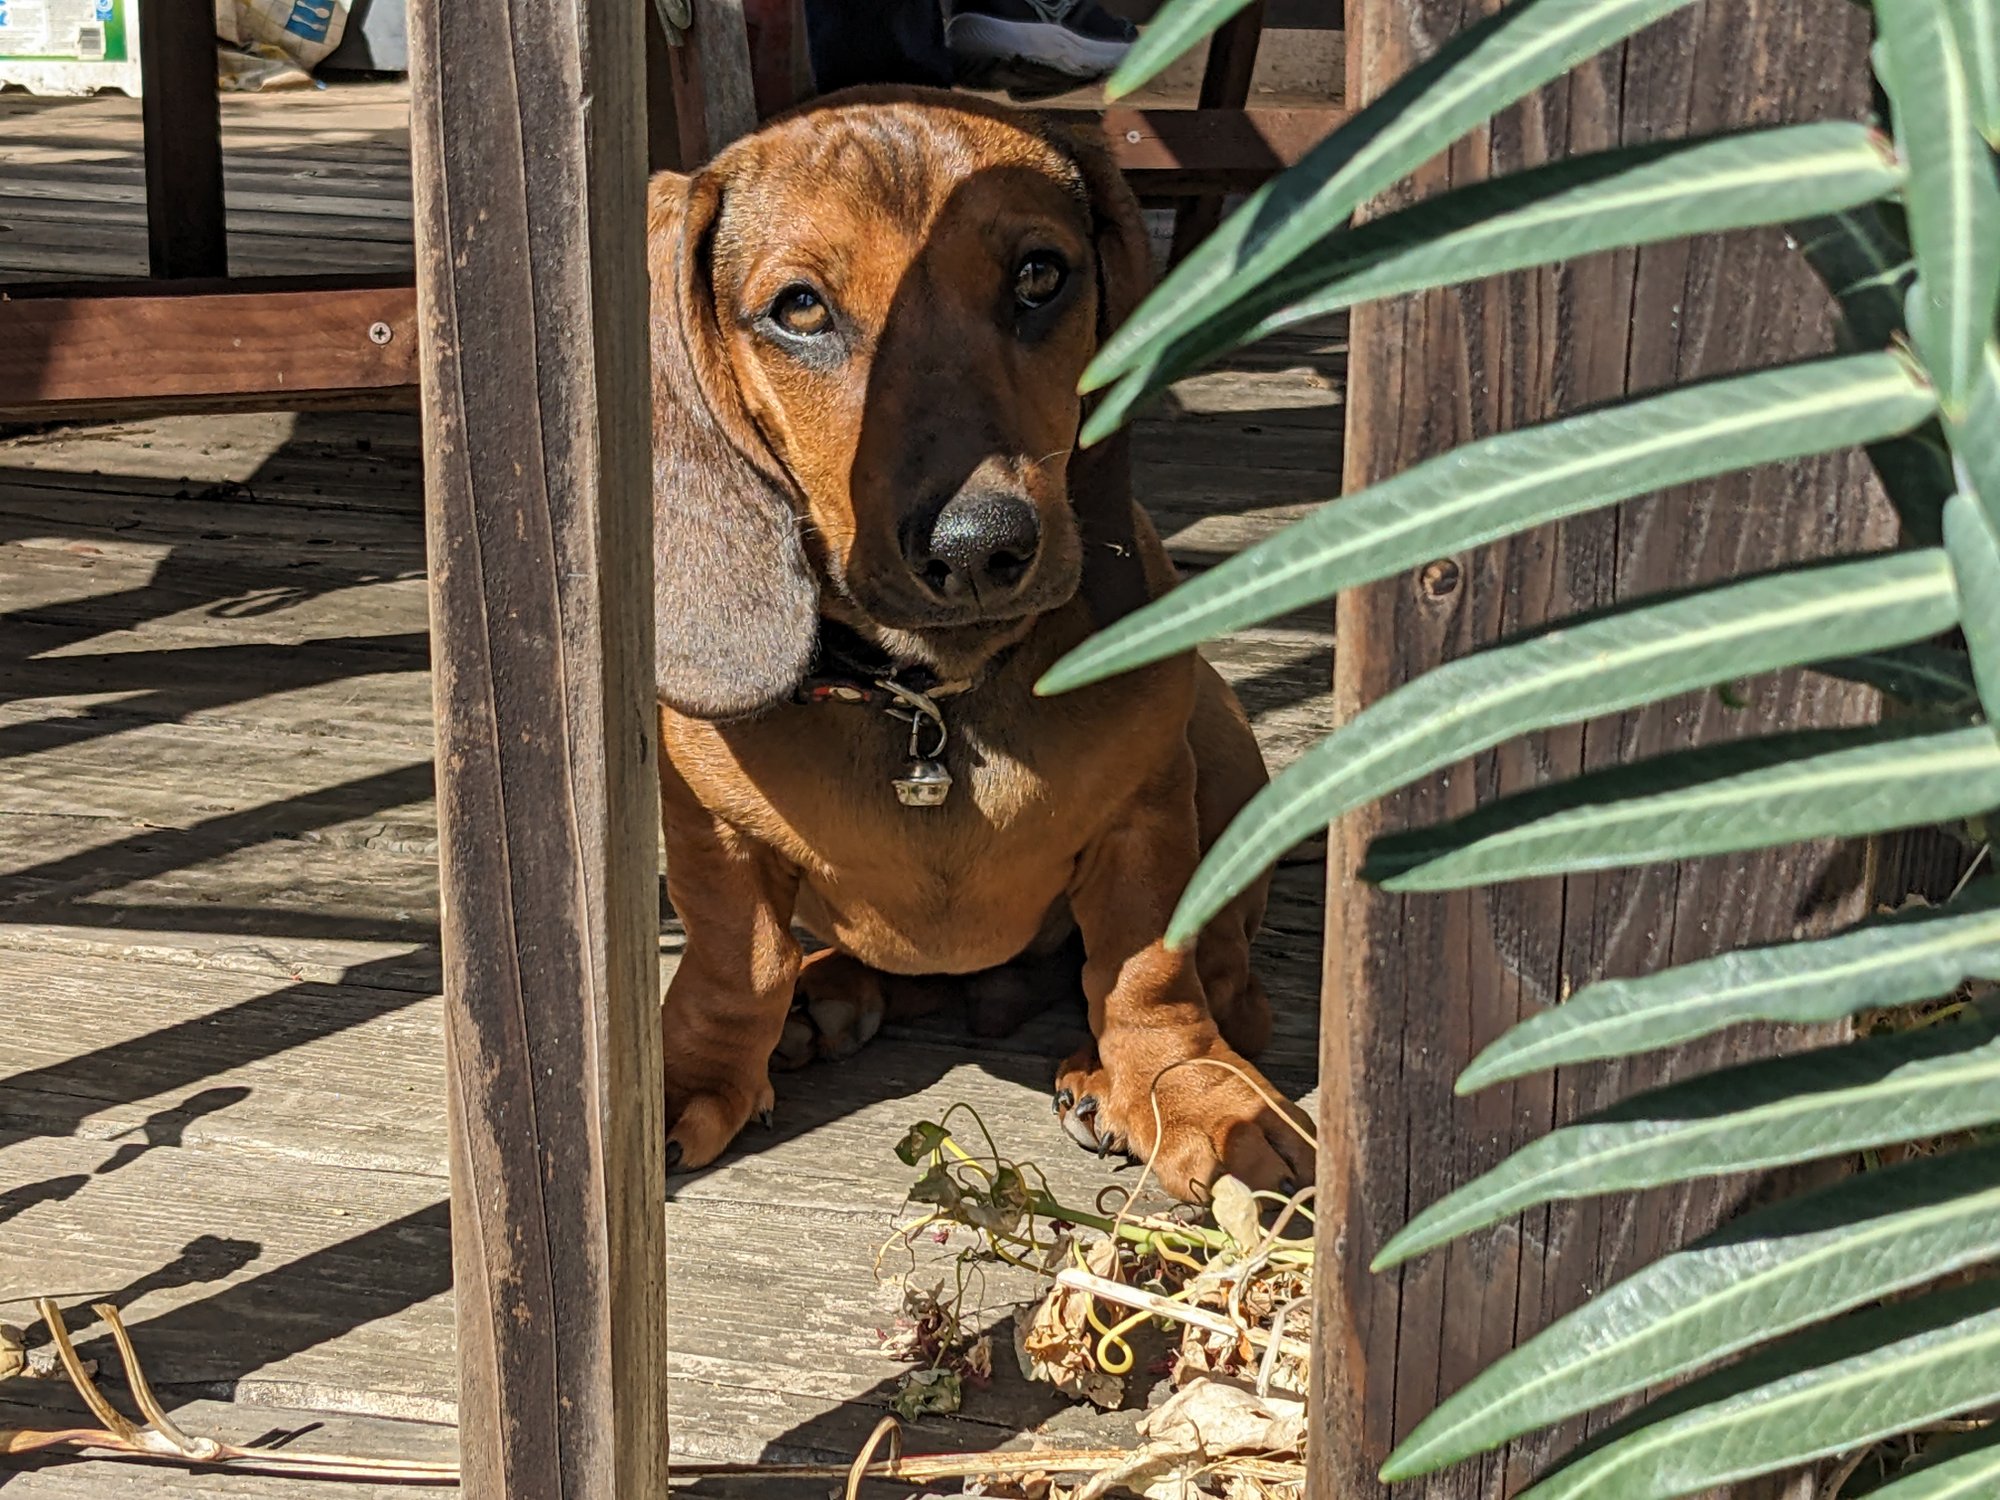 A dachshund puppy looking sad